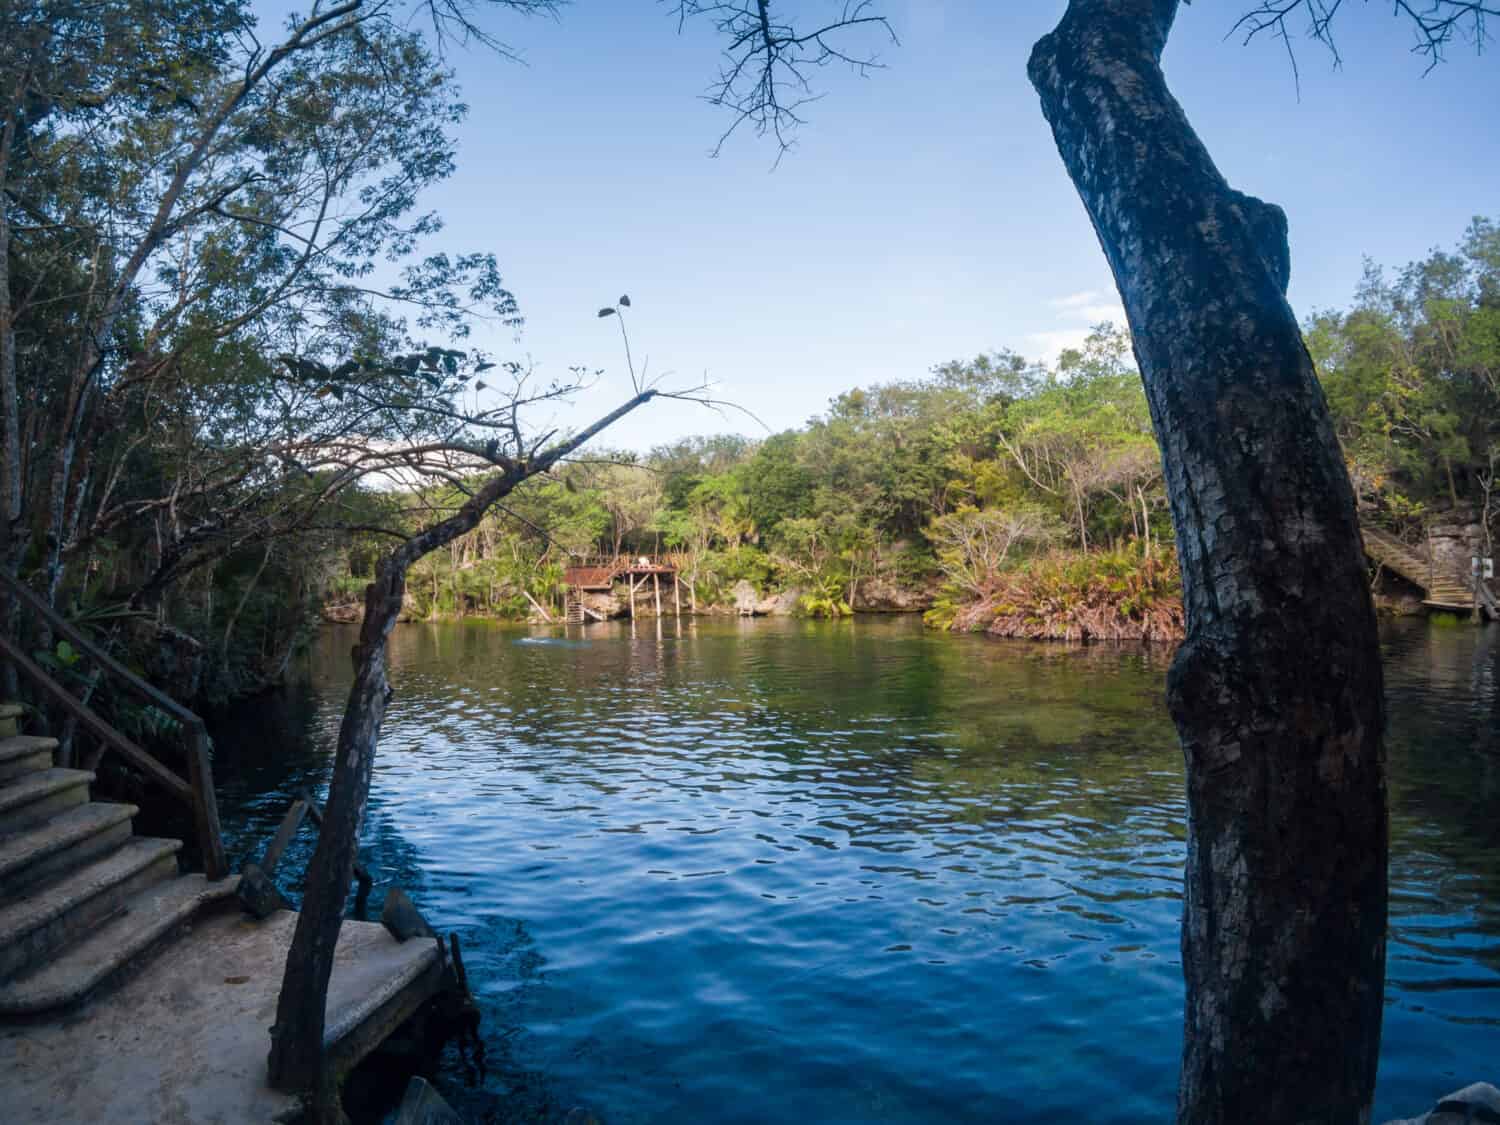 The cenote El Jardin del Eden in Quintana Roo, Mexico.